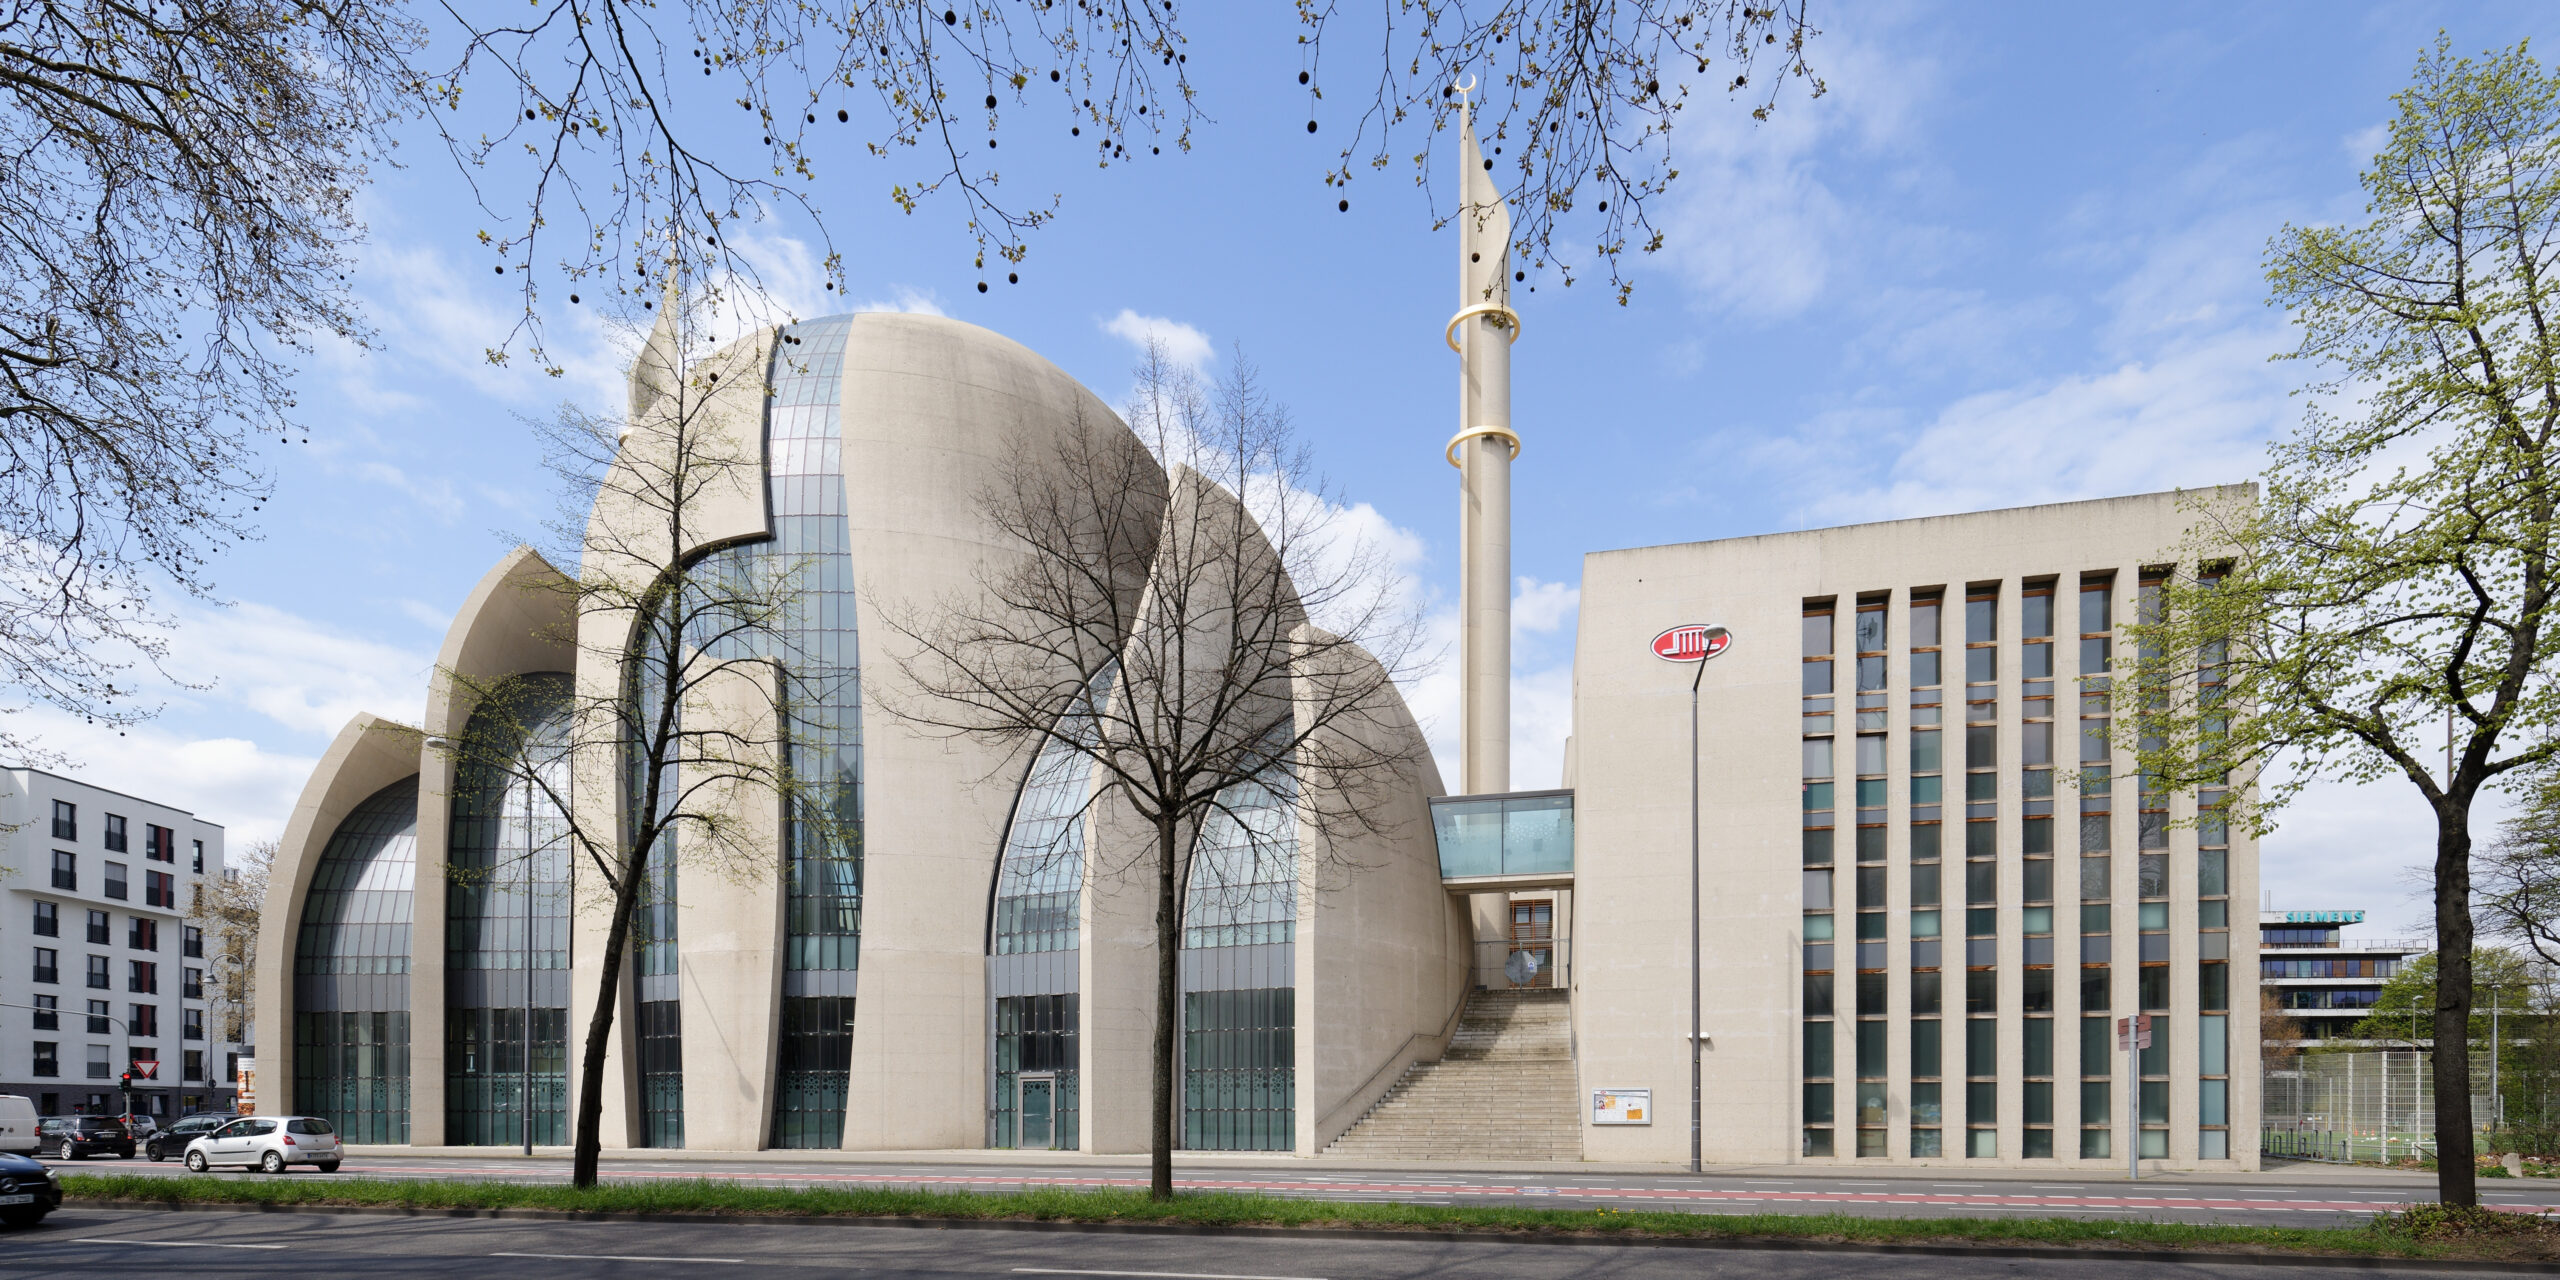 Současný výzkum mešit v západní Evropě a dvě nové publikace